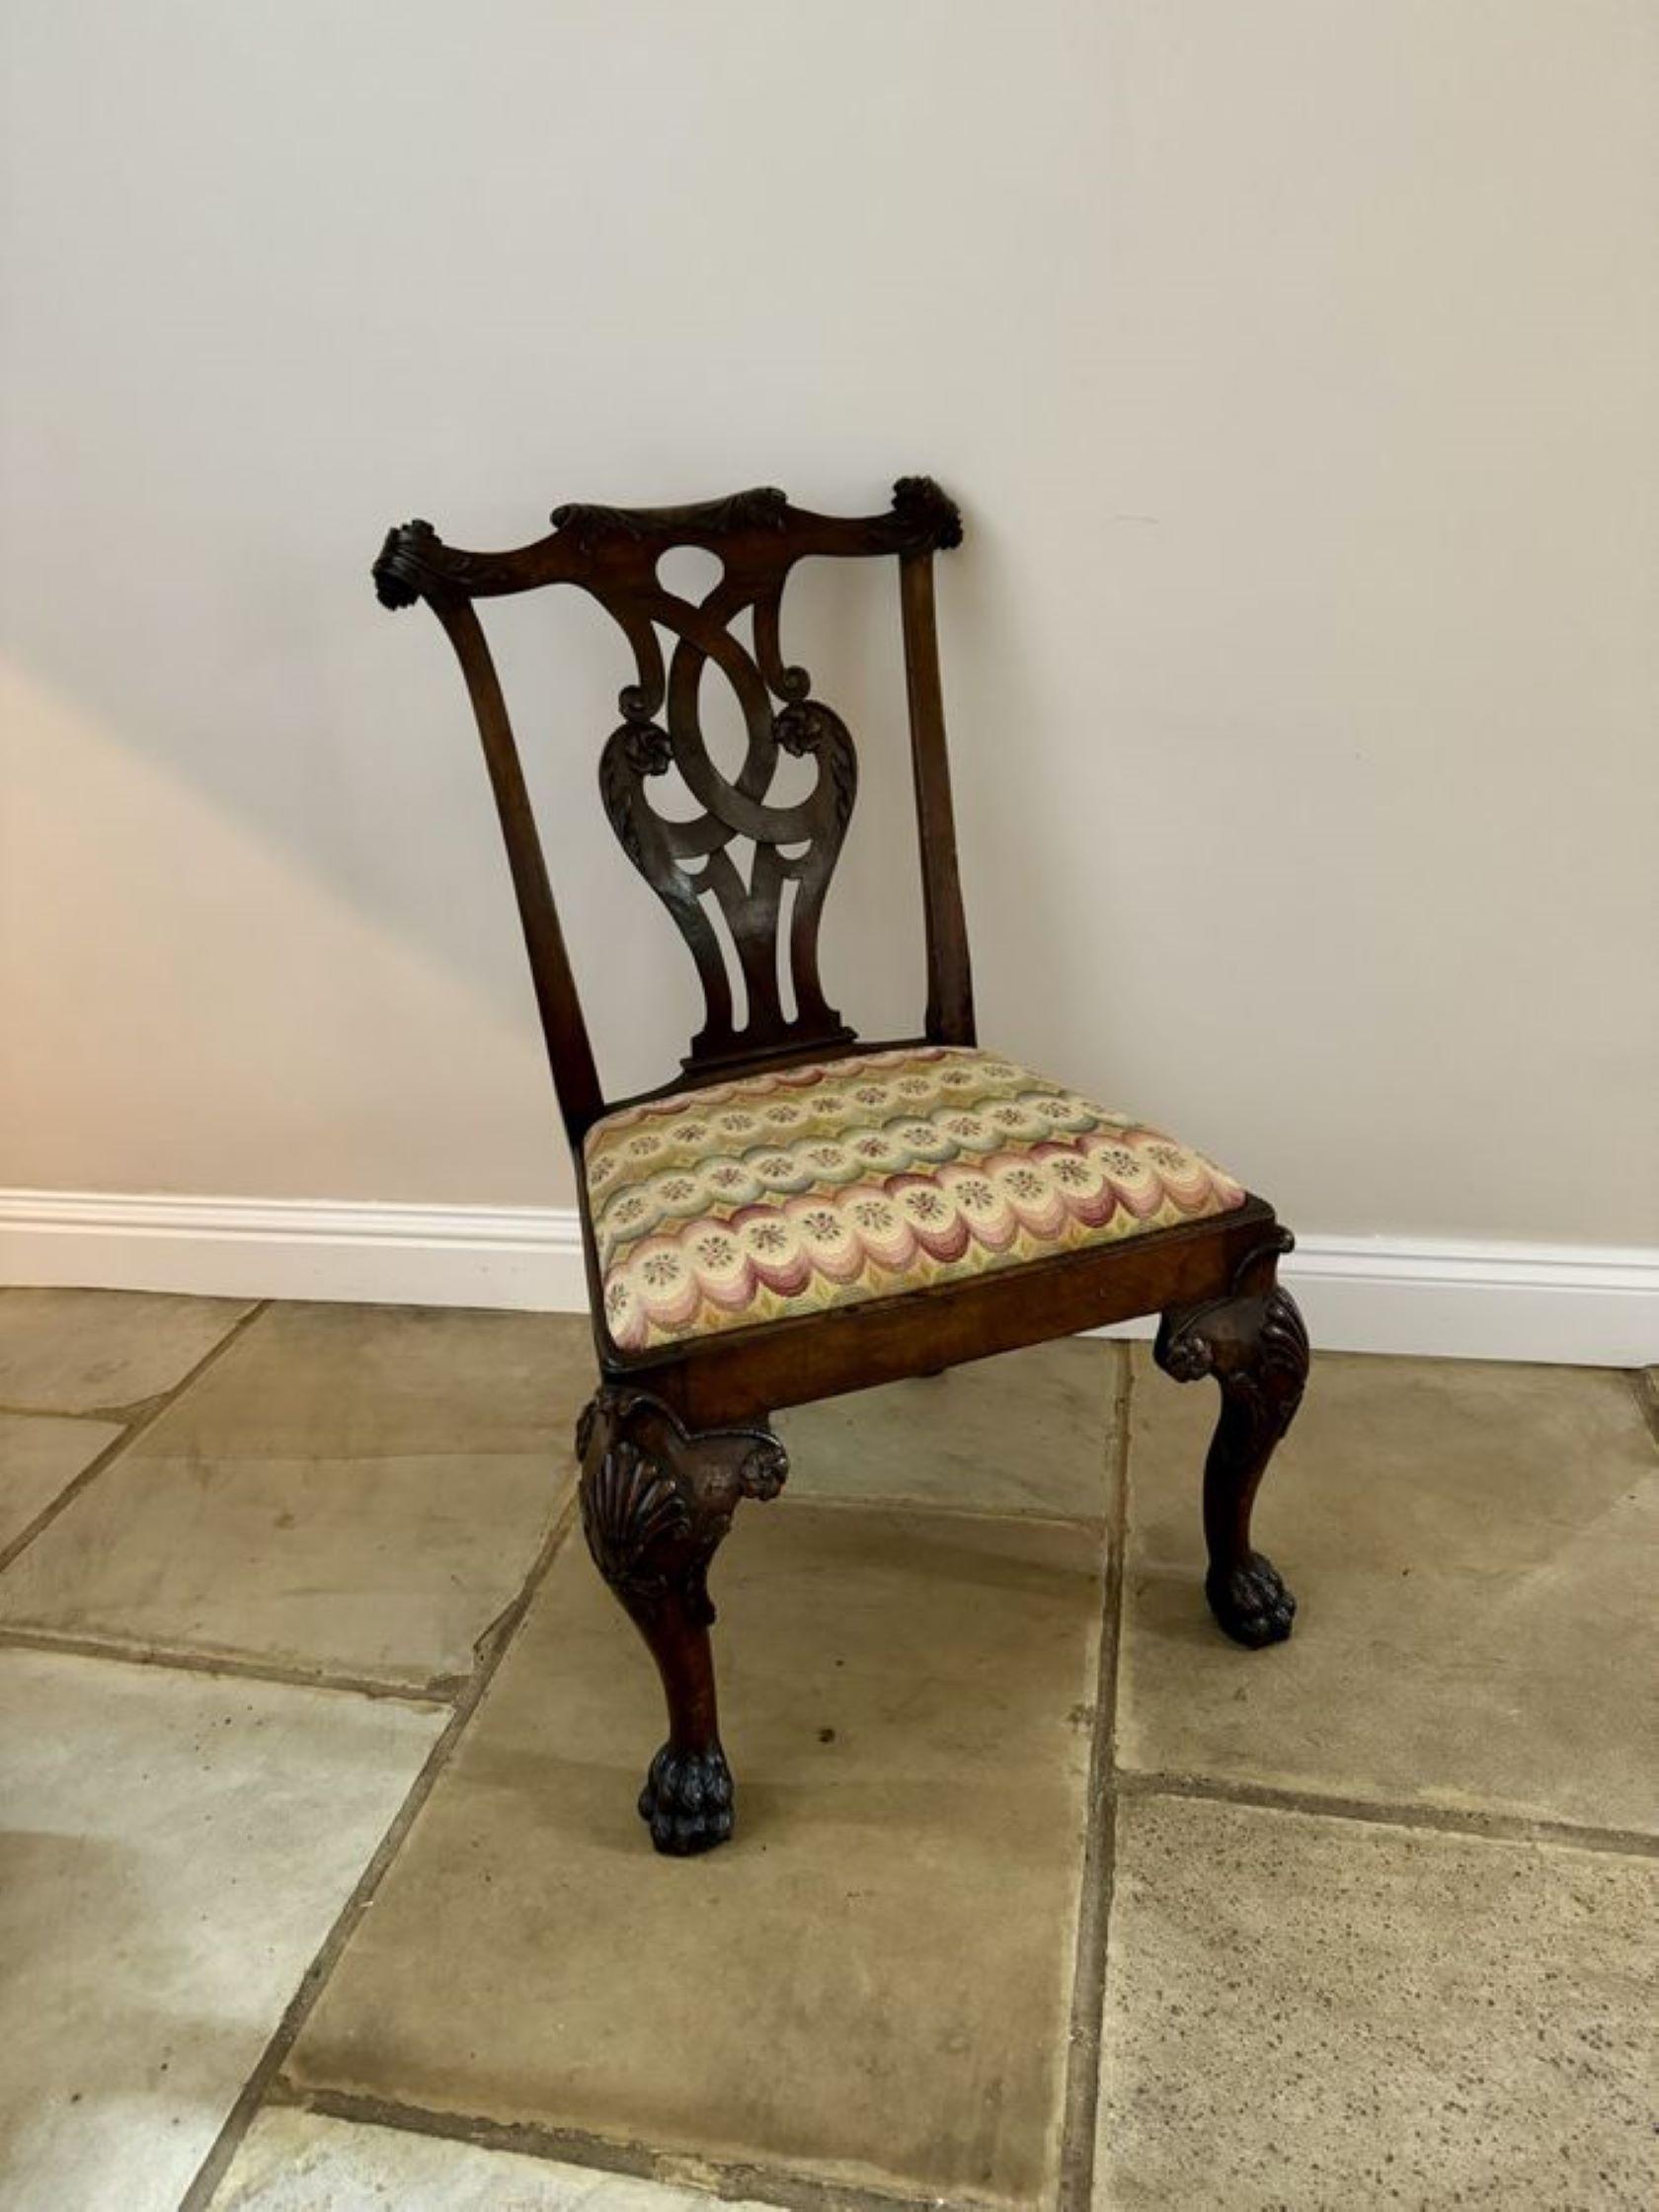 Ensemble de qualité exceptionnelle de huit chaises de salle à manger de style Chippendale irlandais en acajou de l'époque victorienne, comprenant une paire de chaises coudées avec des accoudoirs ouverts et six chaises simples. Le dossier en acajou